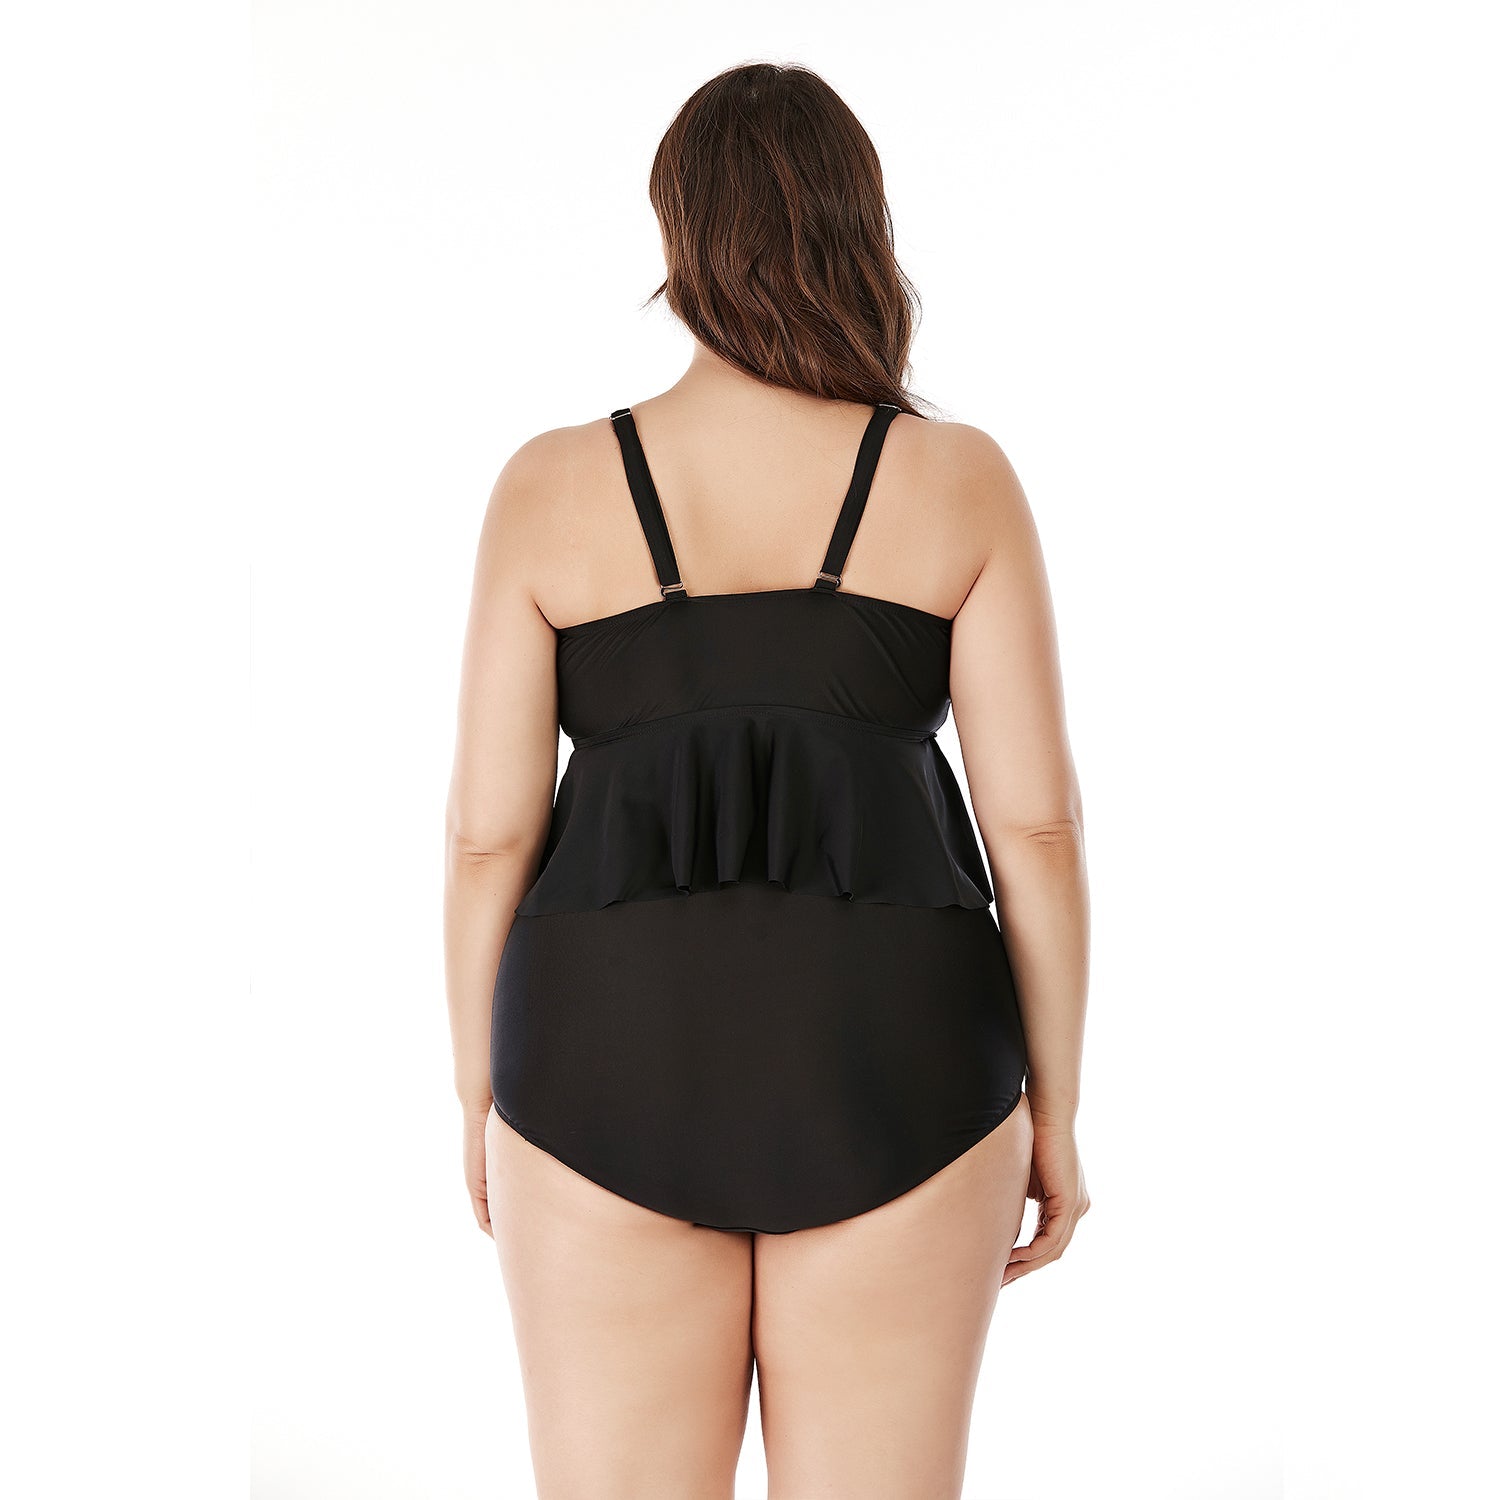 SiySiy Plus Size Two Piece Swimsuit Ruffle Plain Black Swimsuit